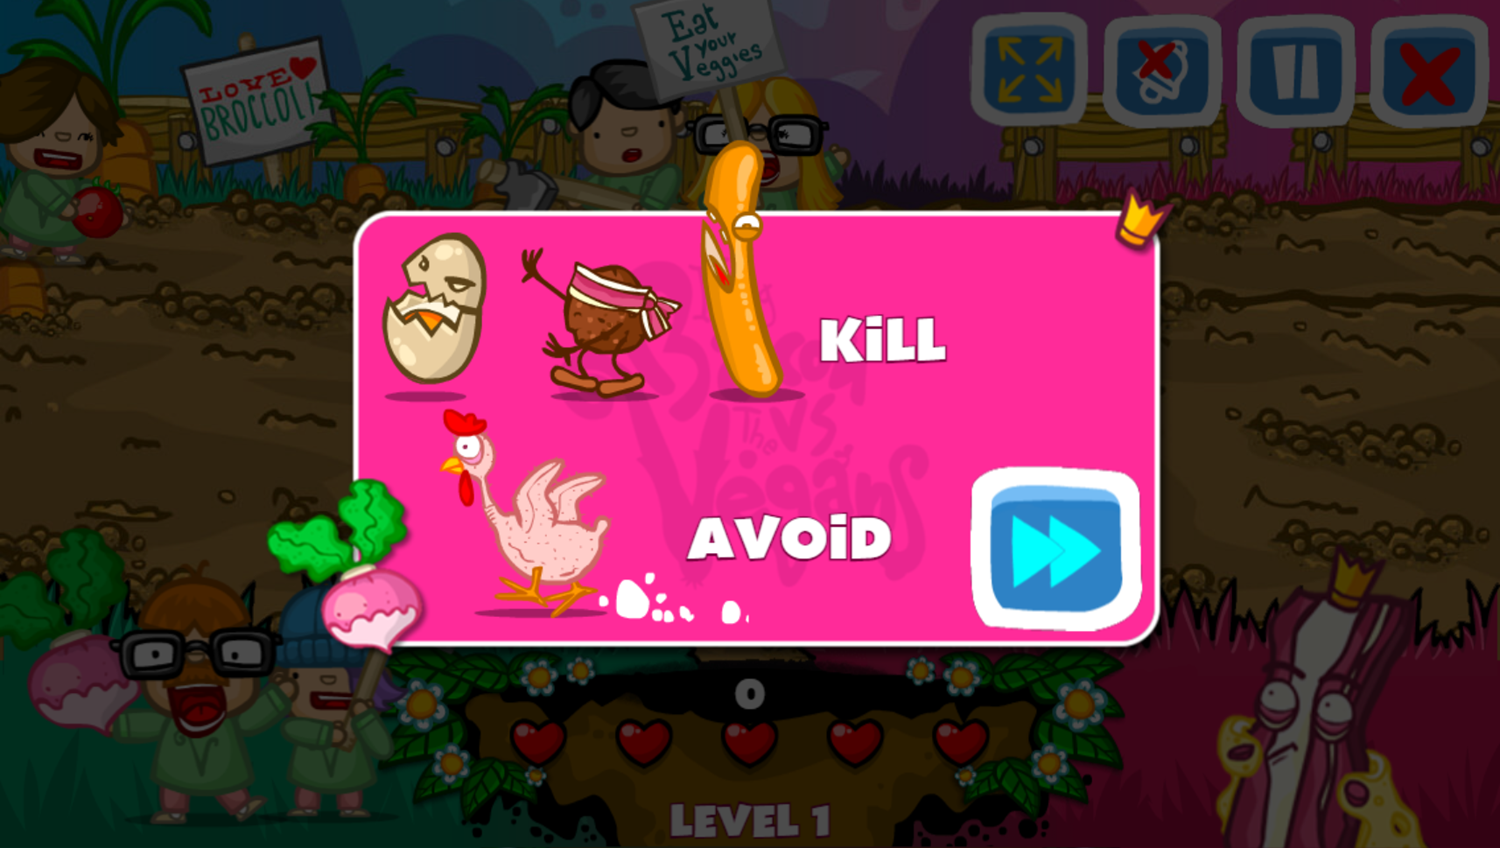 King Bacon vs Vegans Game Level Goal Screenshot.